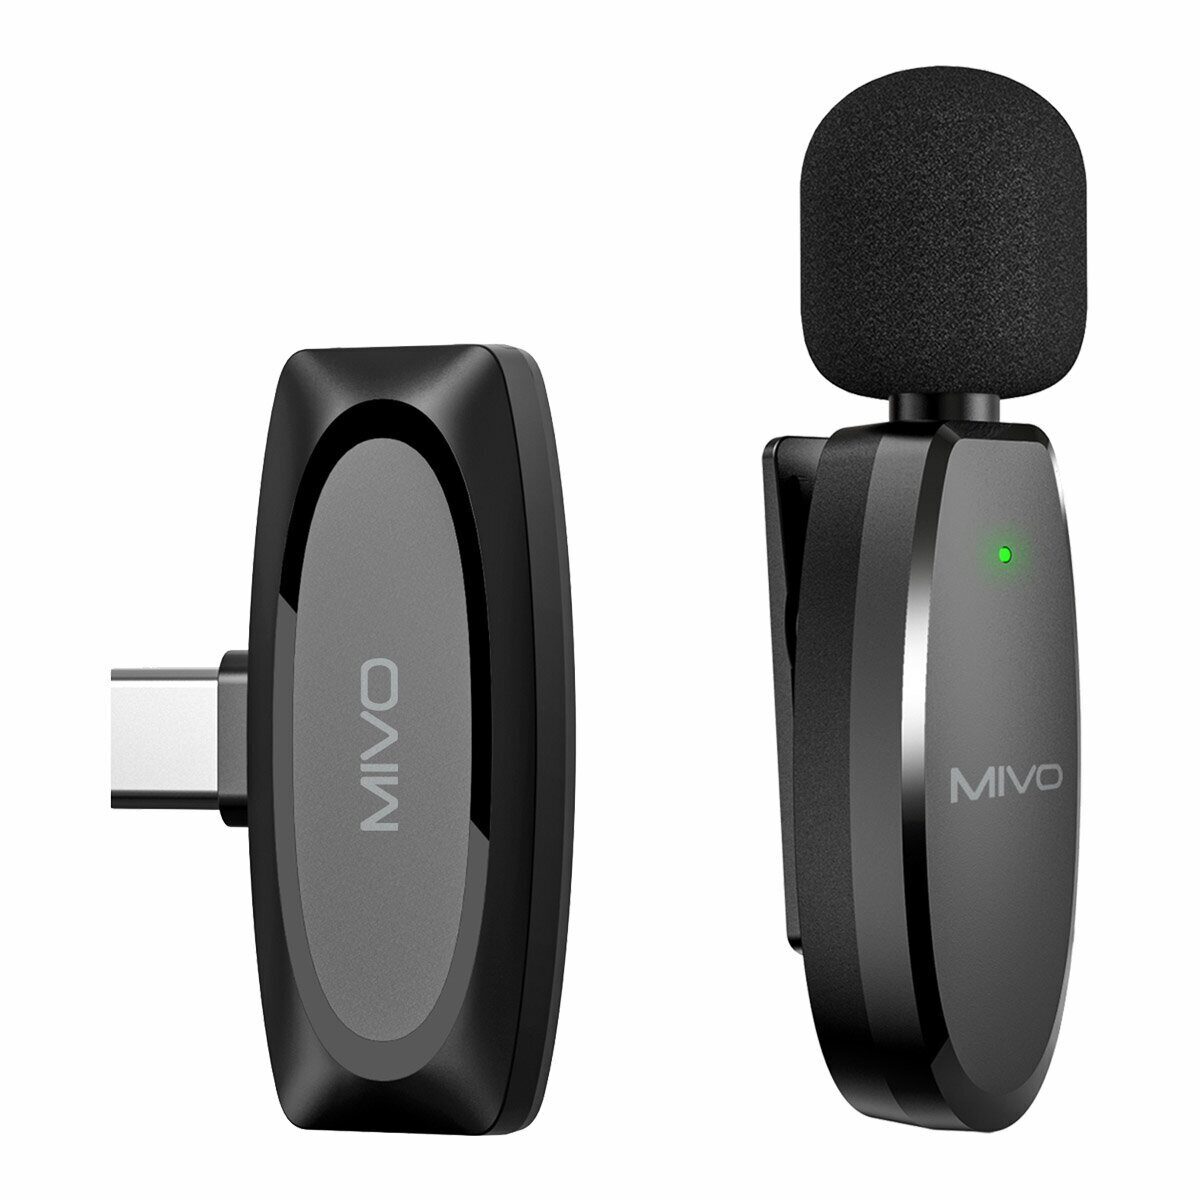 Беспроводной Bluetooth петличный микрофон Mivo MK-610T (Type-C) беспроводной караоке микрофон l 598 9w